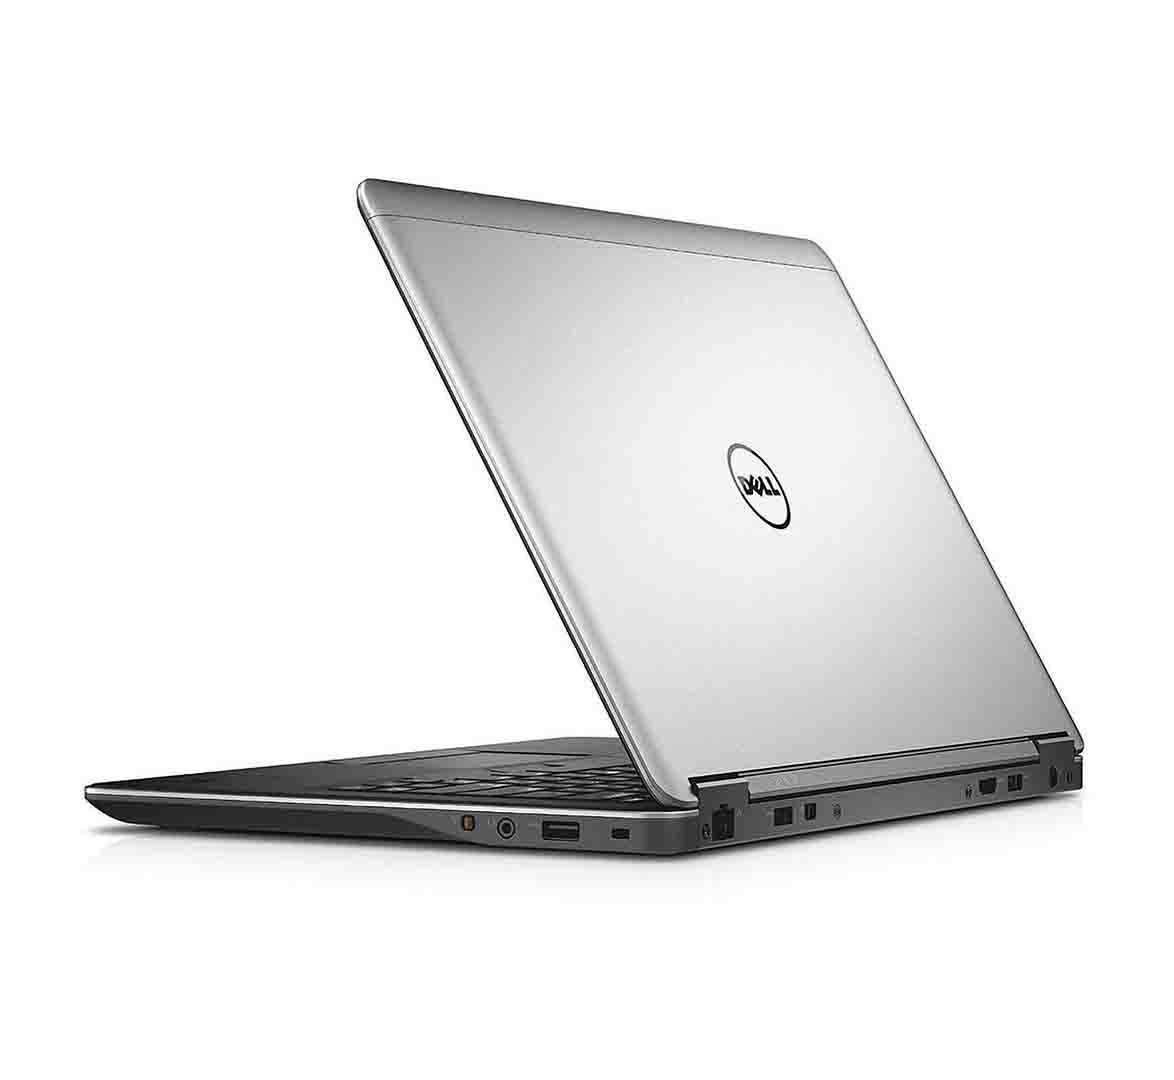 Dell Latitude E7440 Business Laptop, Intel Core i5-4th Gen. CPU, 8GB RAM, 256GB SSD, 14 inch Display, Windows 10 Pro